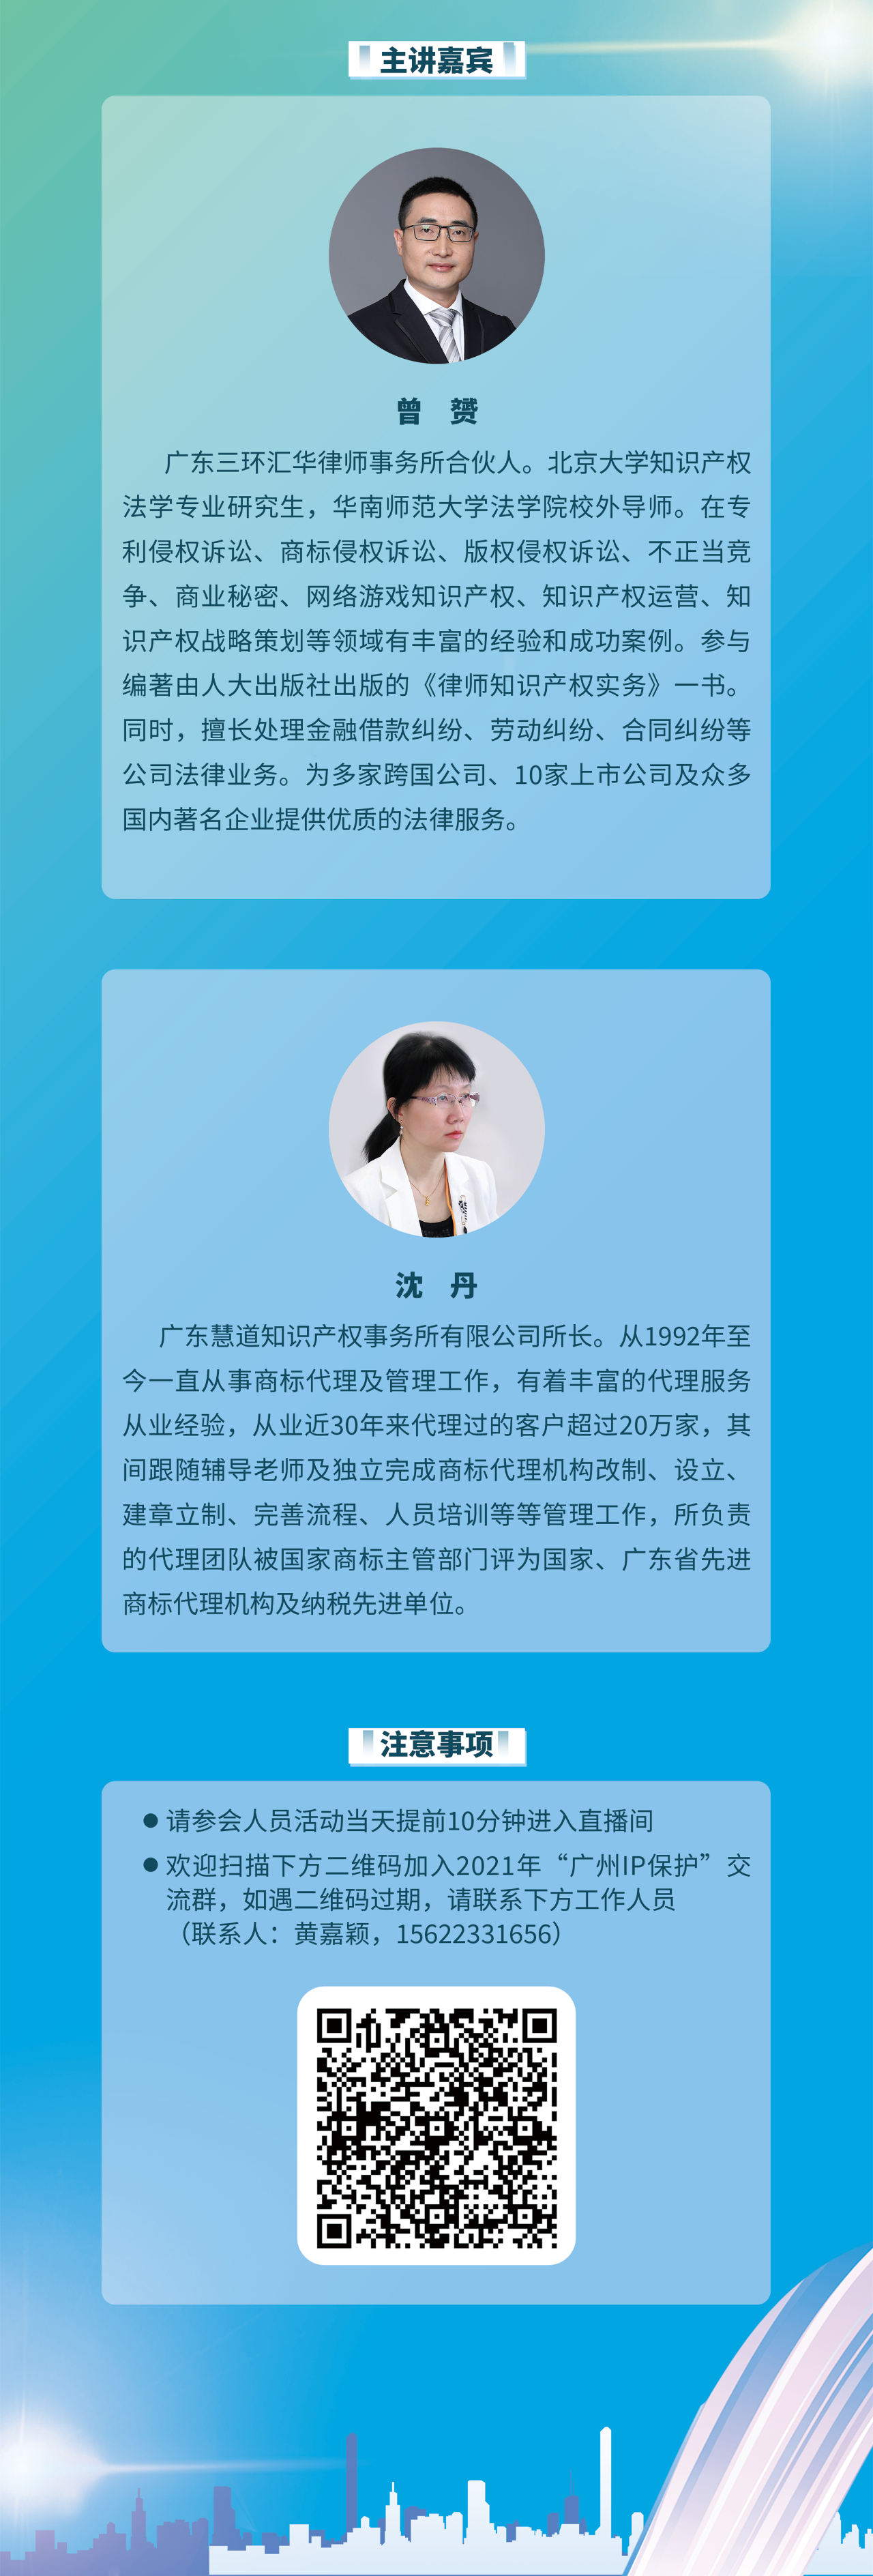 今天14:00直播！2021“广州IP保护”线上公益课堂——大咖带你解读知识产权法规上新